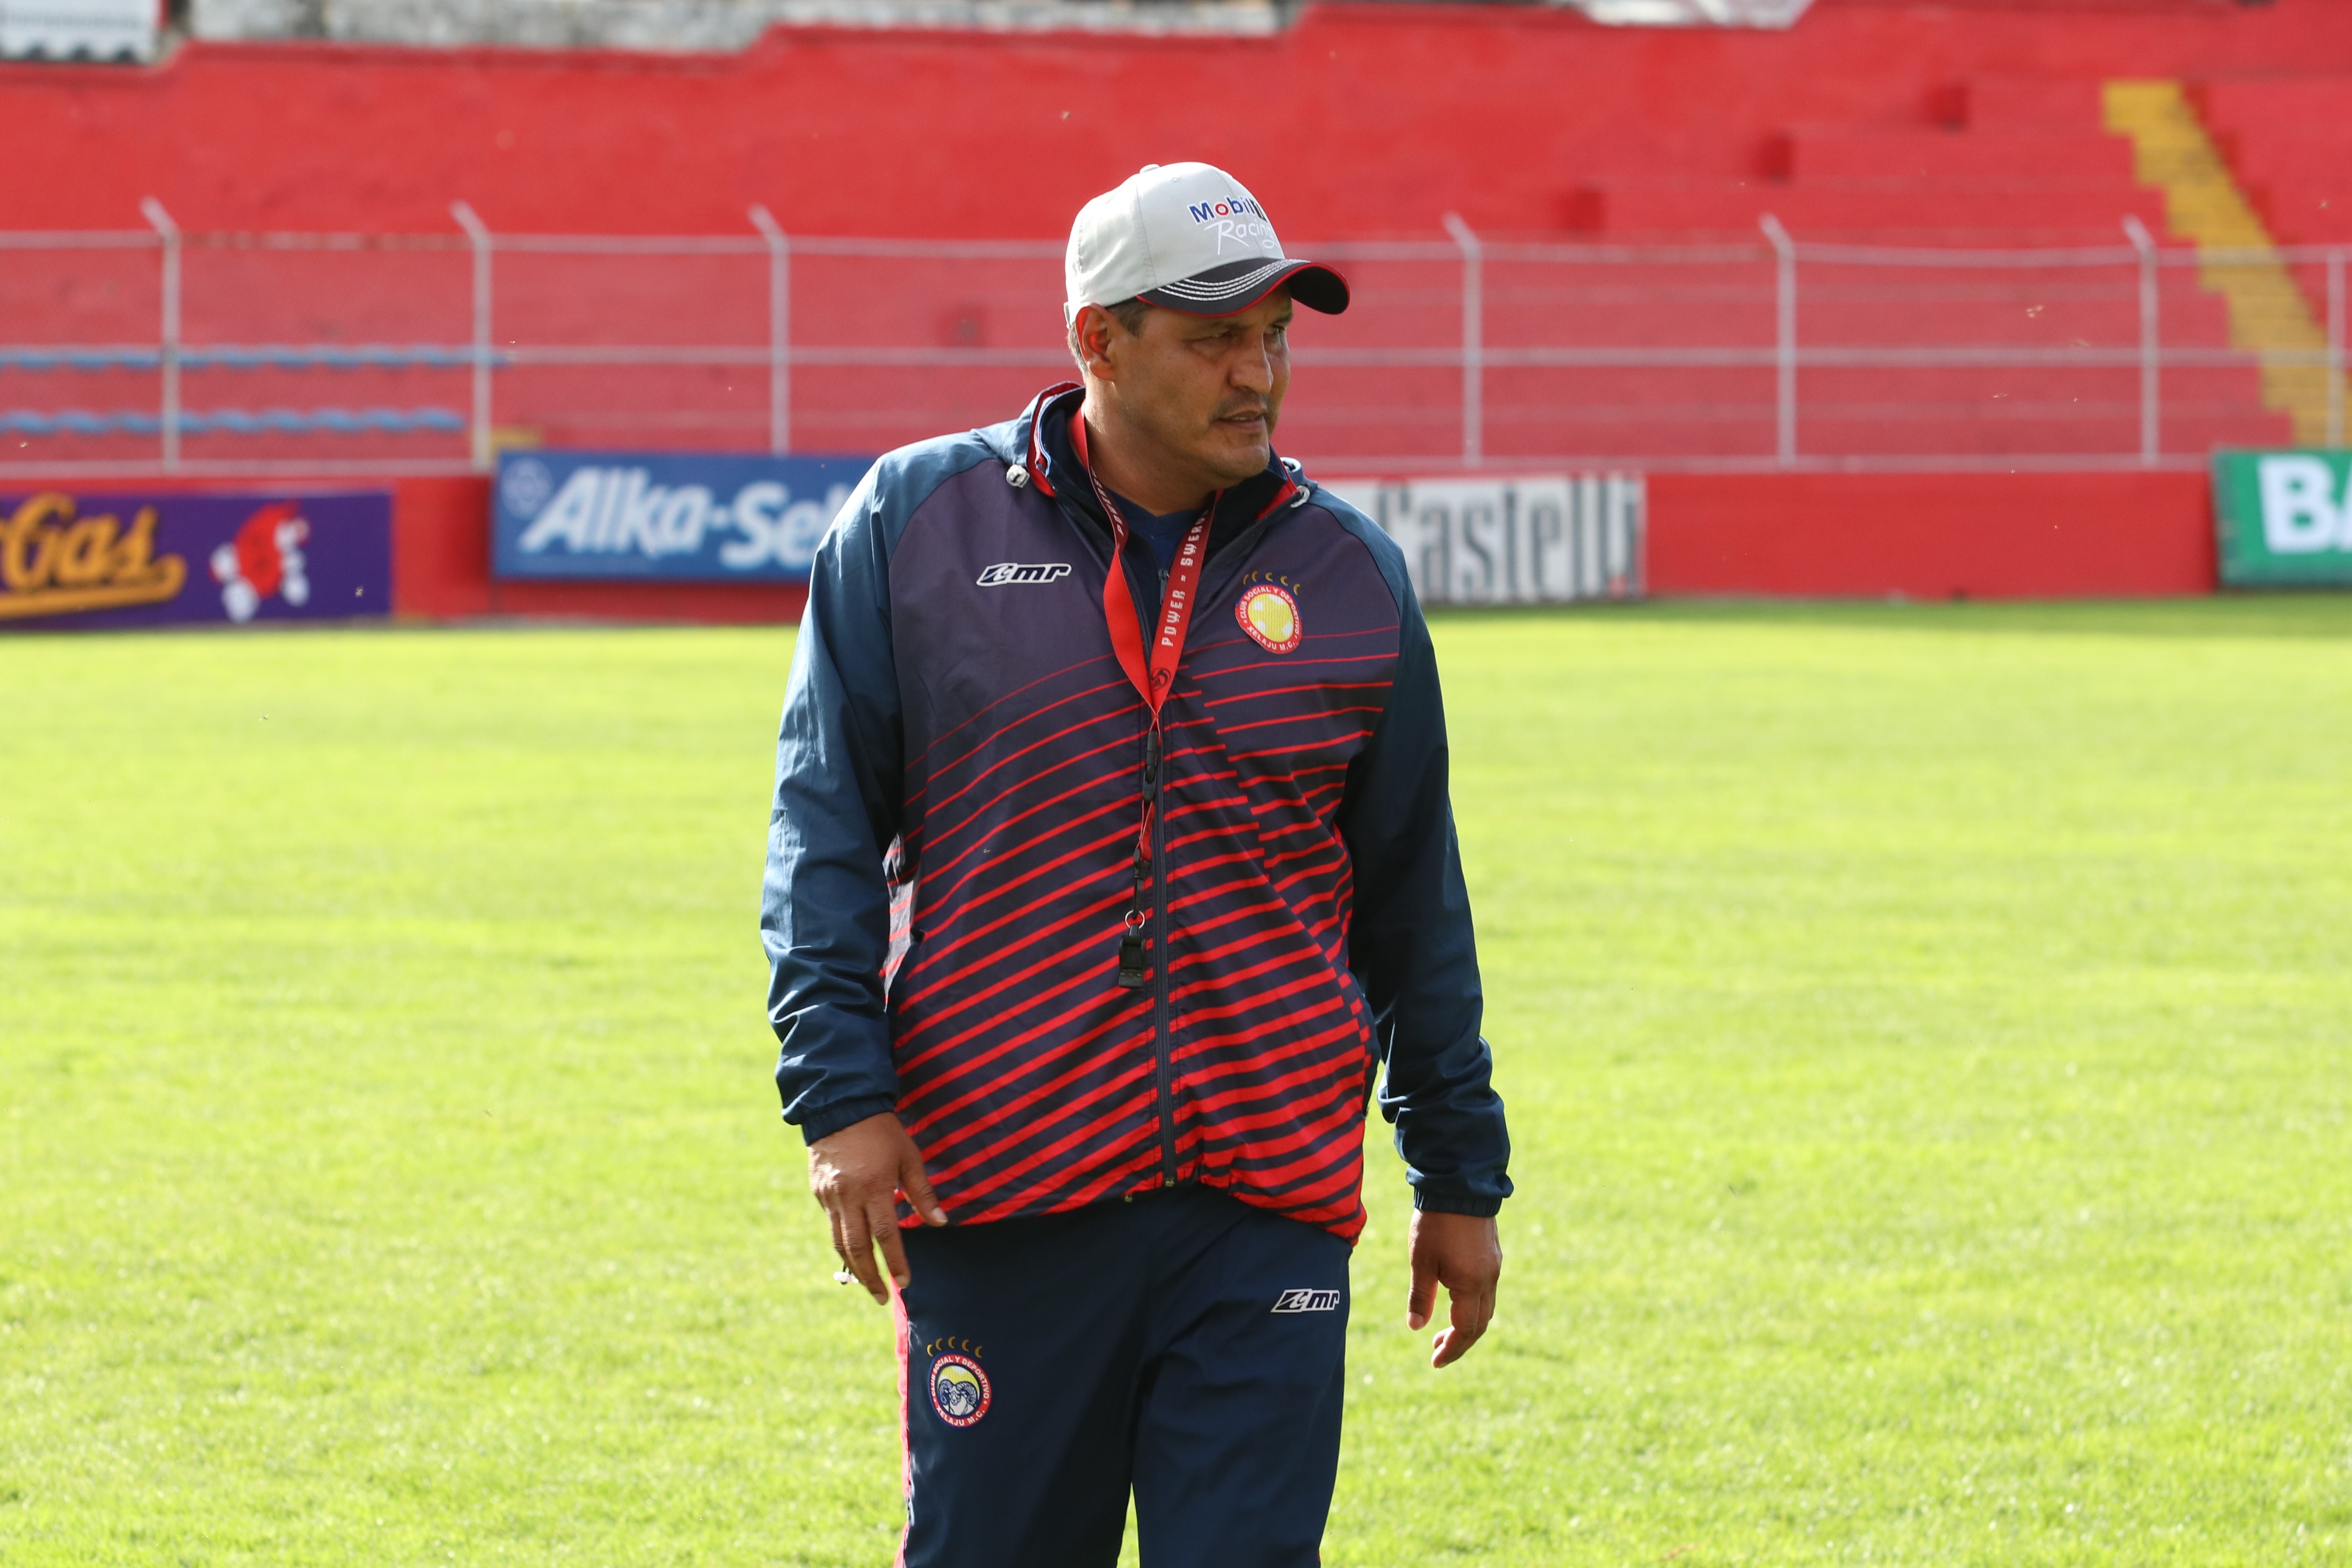 El entrenador confía que Xelajú logrará su primer triunfo del torneo. (Foto Prensa Libre: Raúl Juárez)